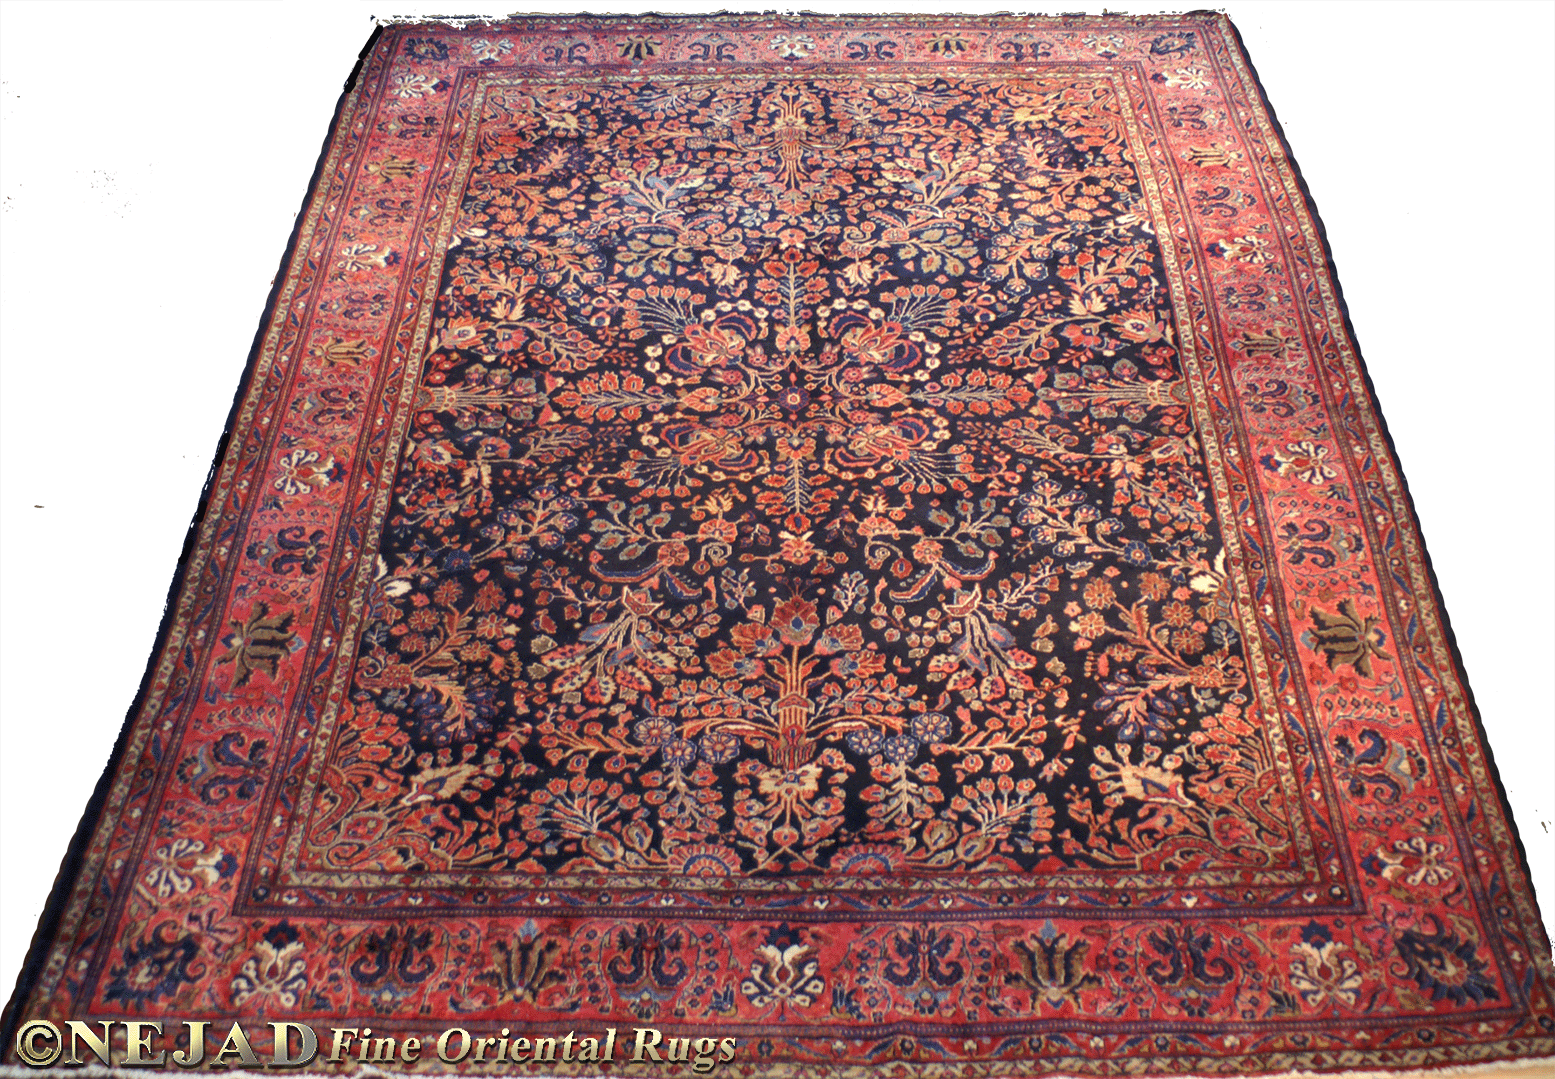 Antique Persian Sarouk Rug - Nejad Rugs #987588